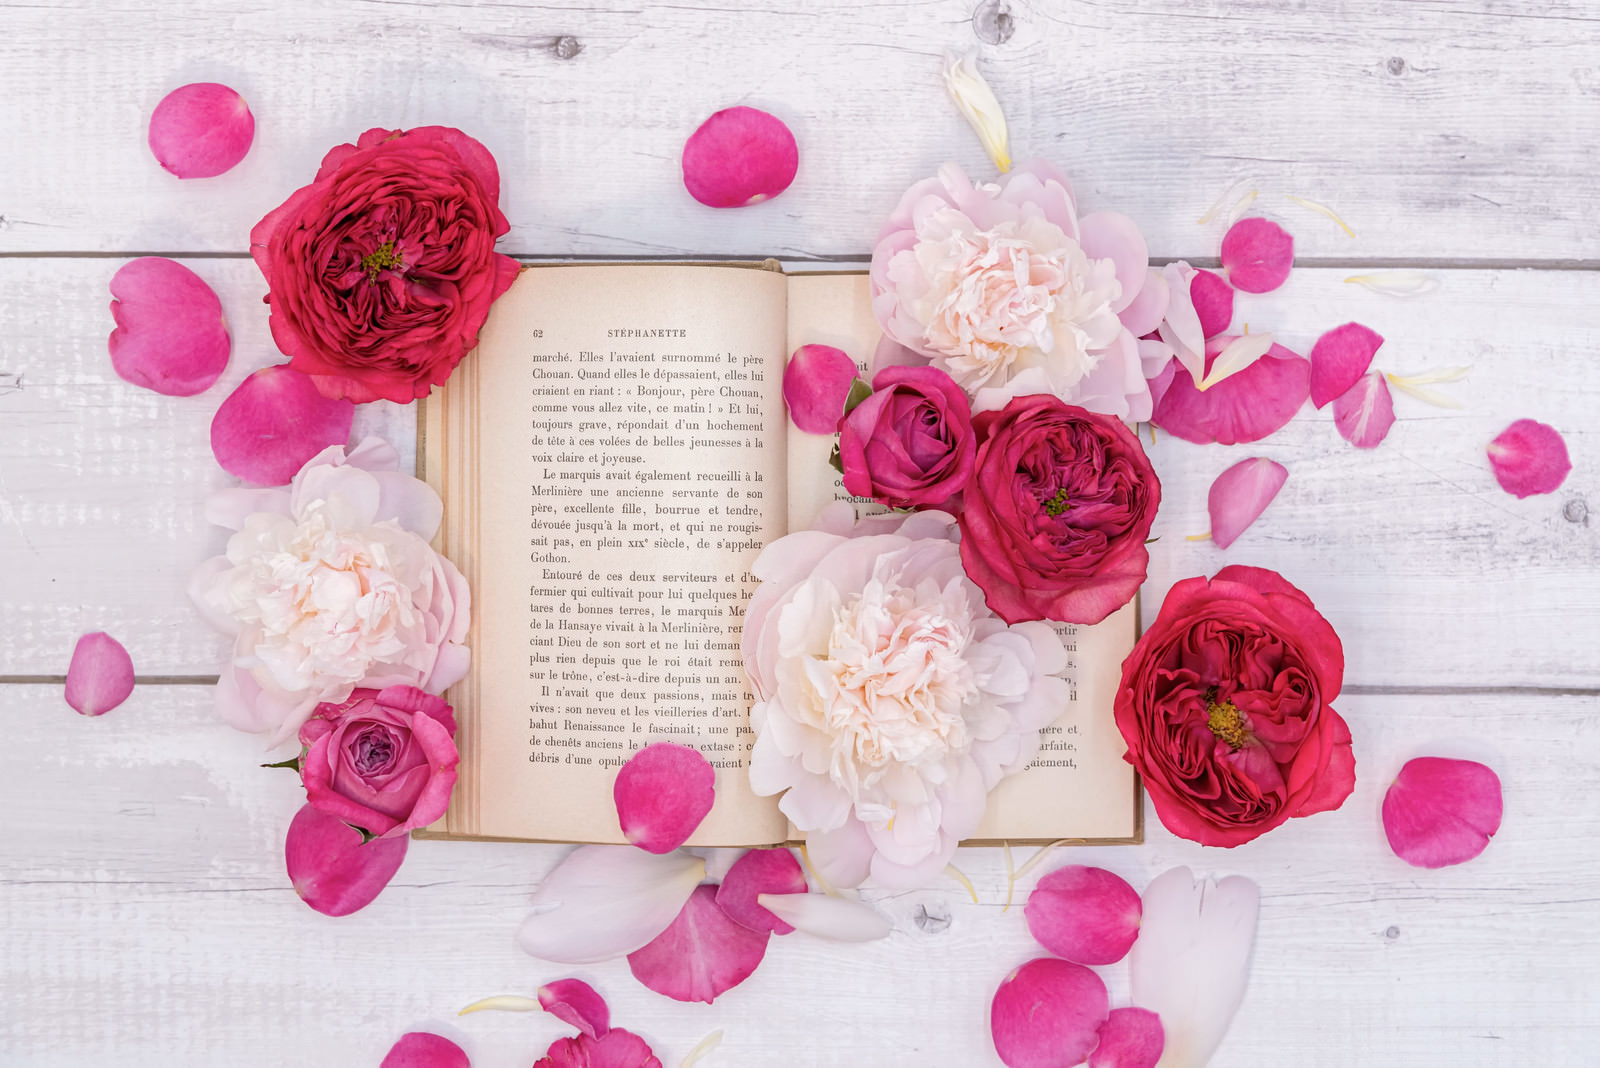 「散らばった薔薇の花びらと読みかけの古書 | フリー素材のぱくたそ」の写真